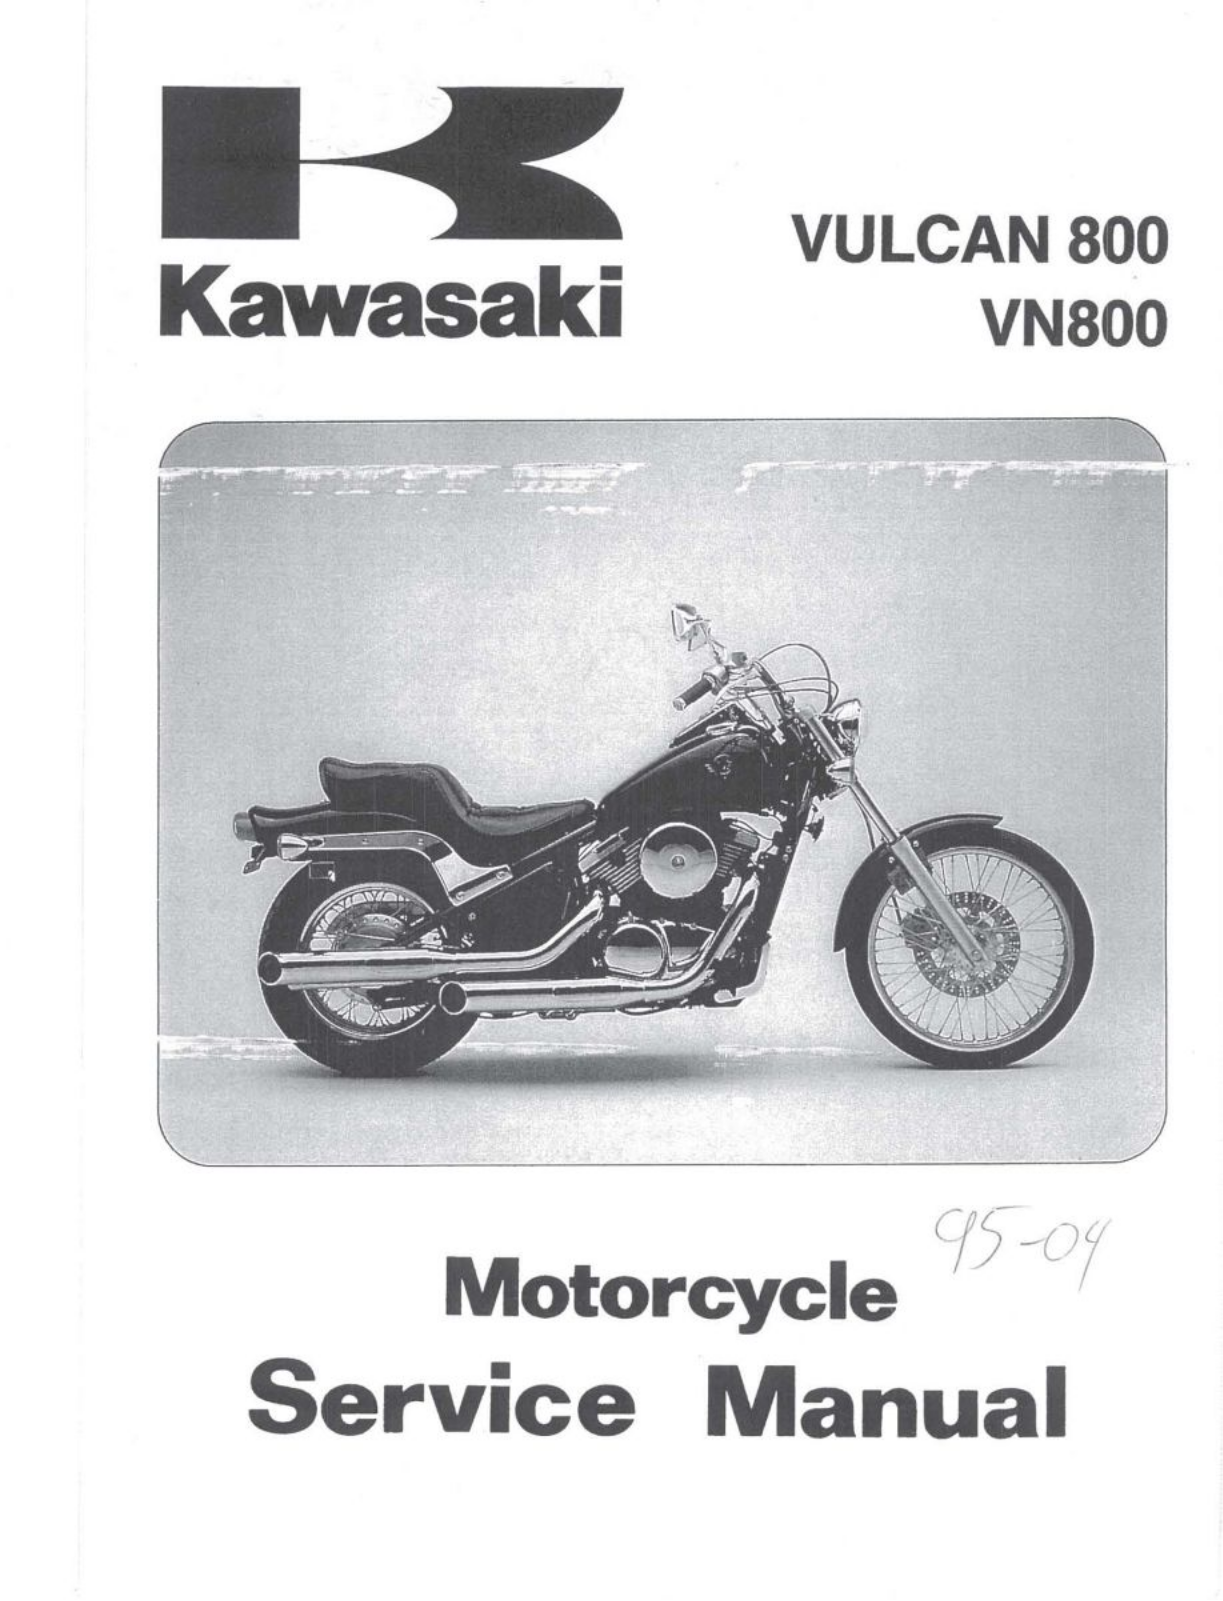 Kawasaki VULCAN 800 Manual